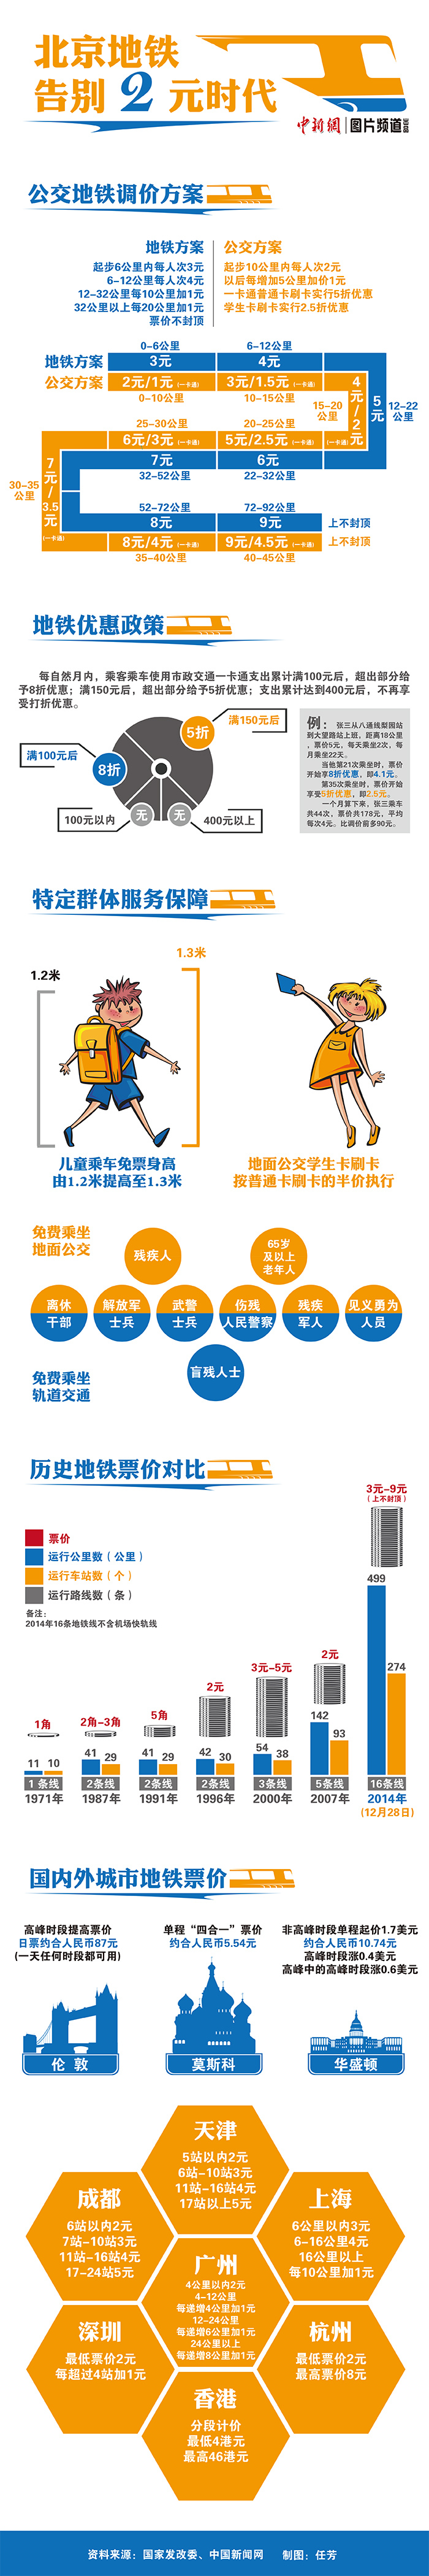 北京公交地铁今日起实行新票价车票设4小时时限